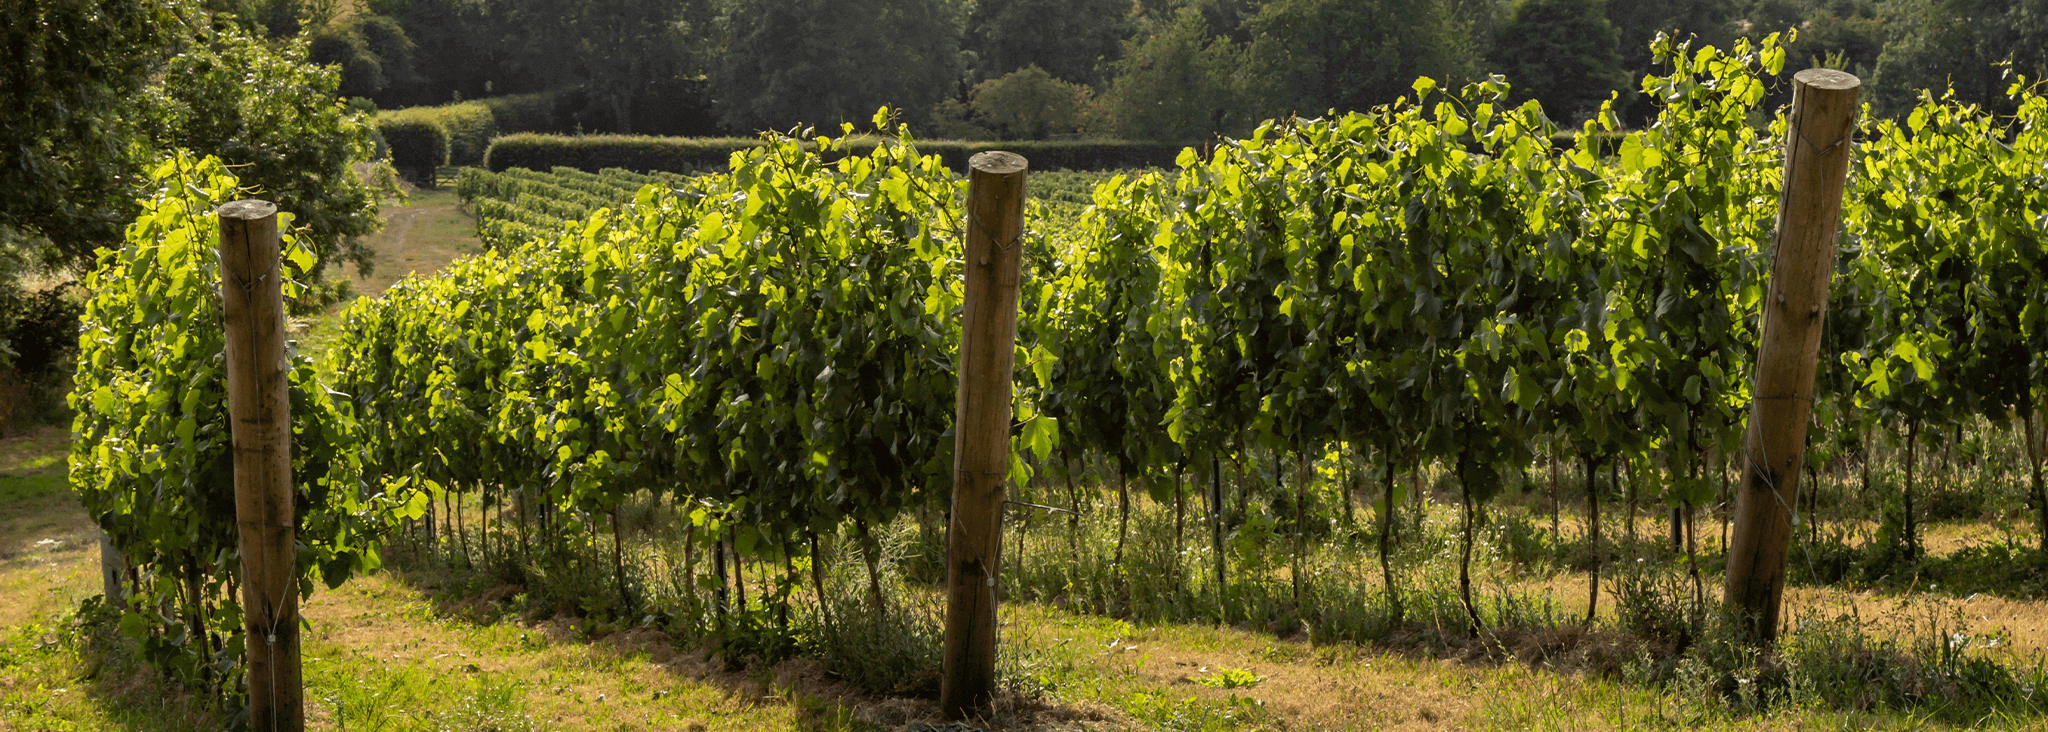 Viticulture - Sussex vineyard